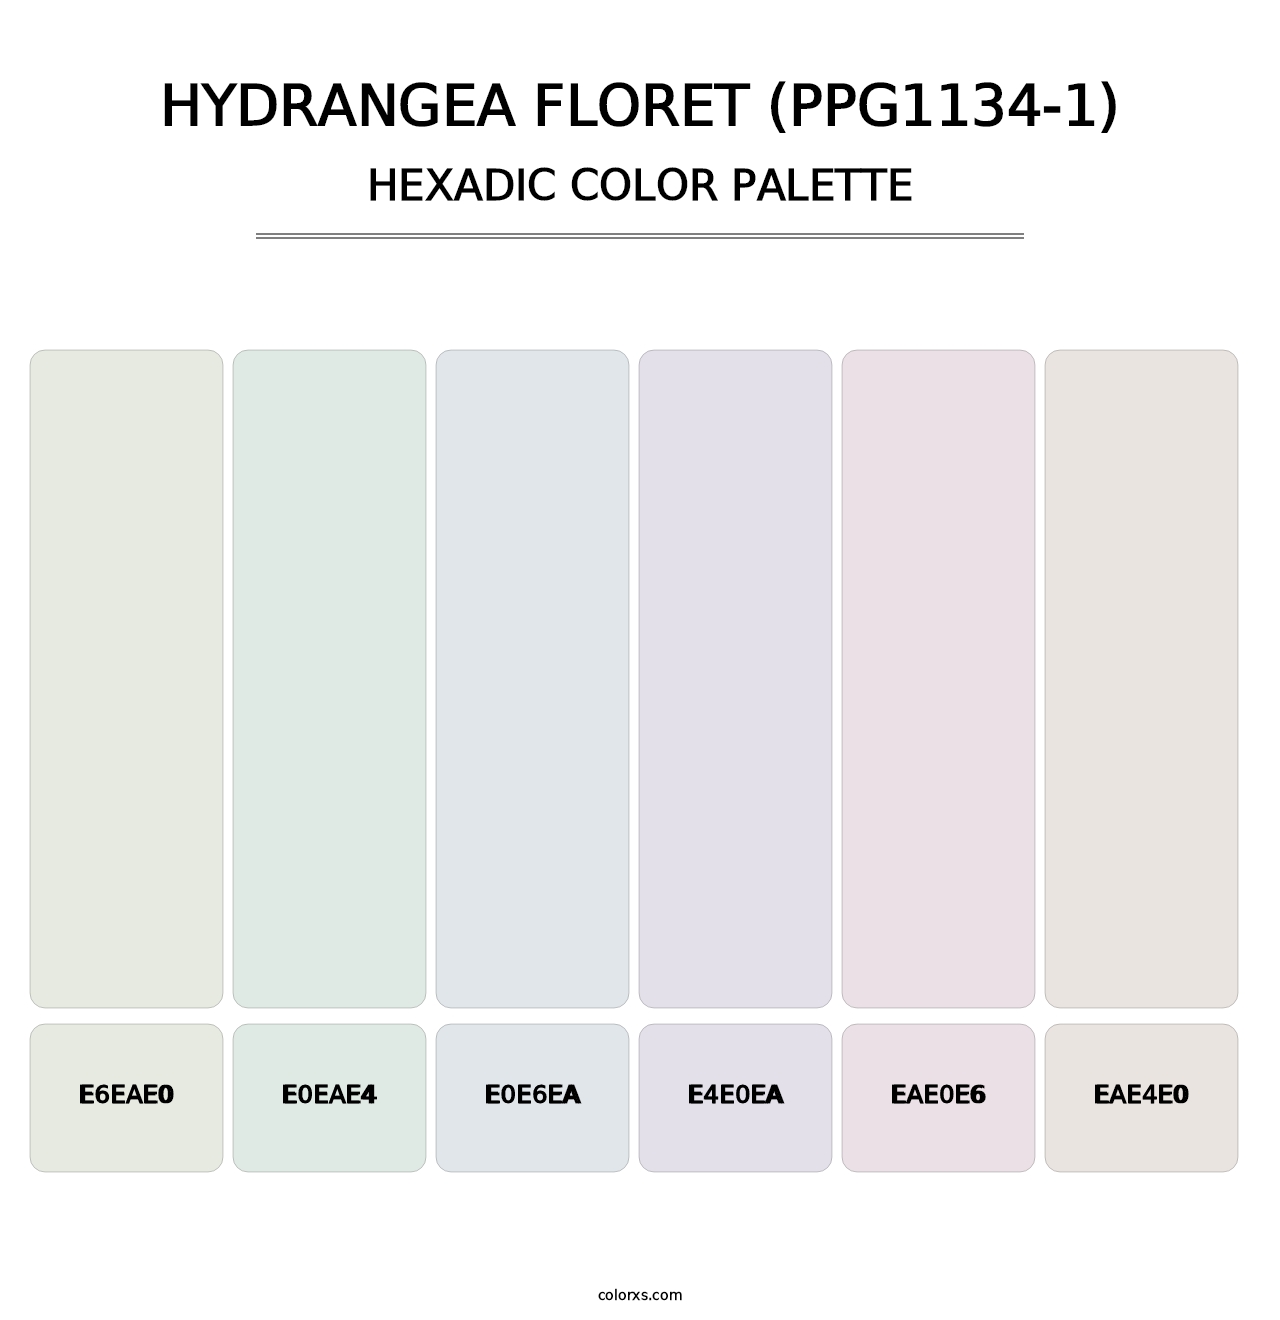 Hydrangea Floret (PPG1134-1) - Hexadic Color Palette